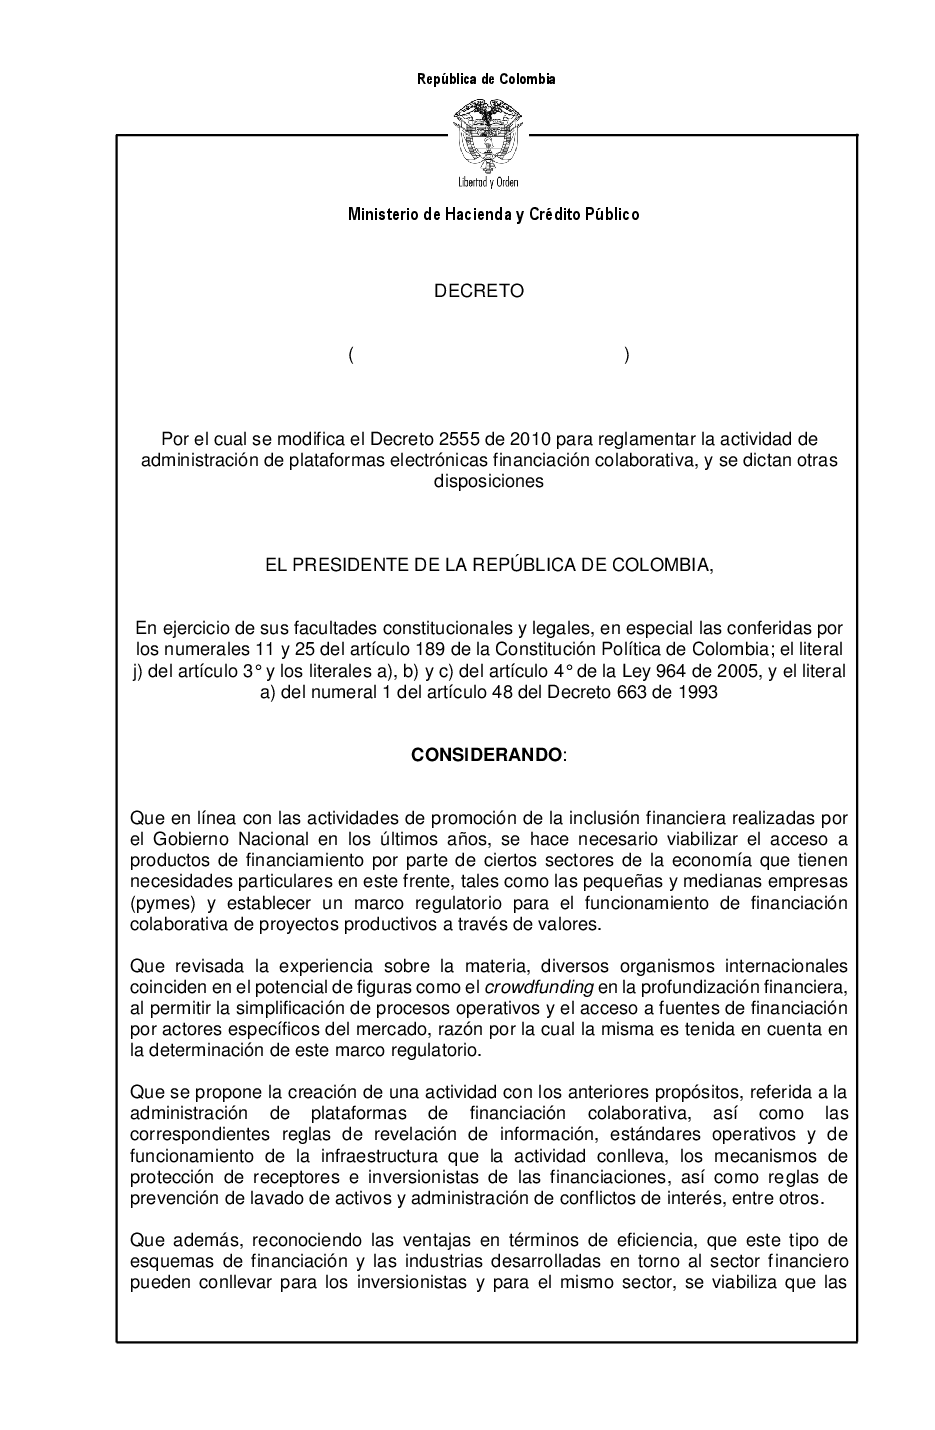 Proyecto de Decreto - Reglamentación de la actividad de administración de plataformas electrónicas de financiación colaborativa